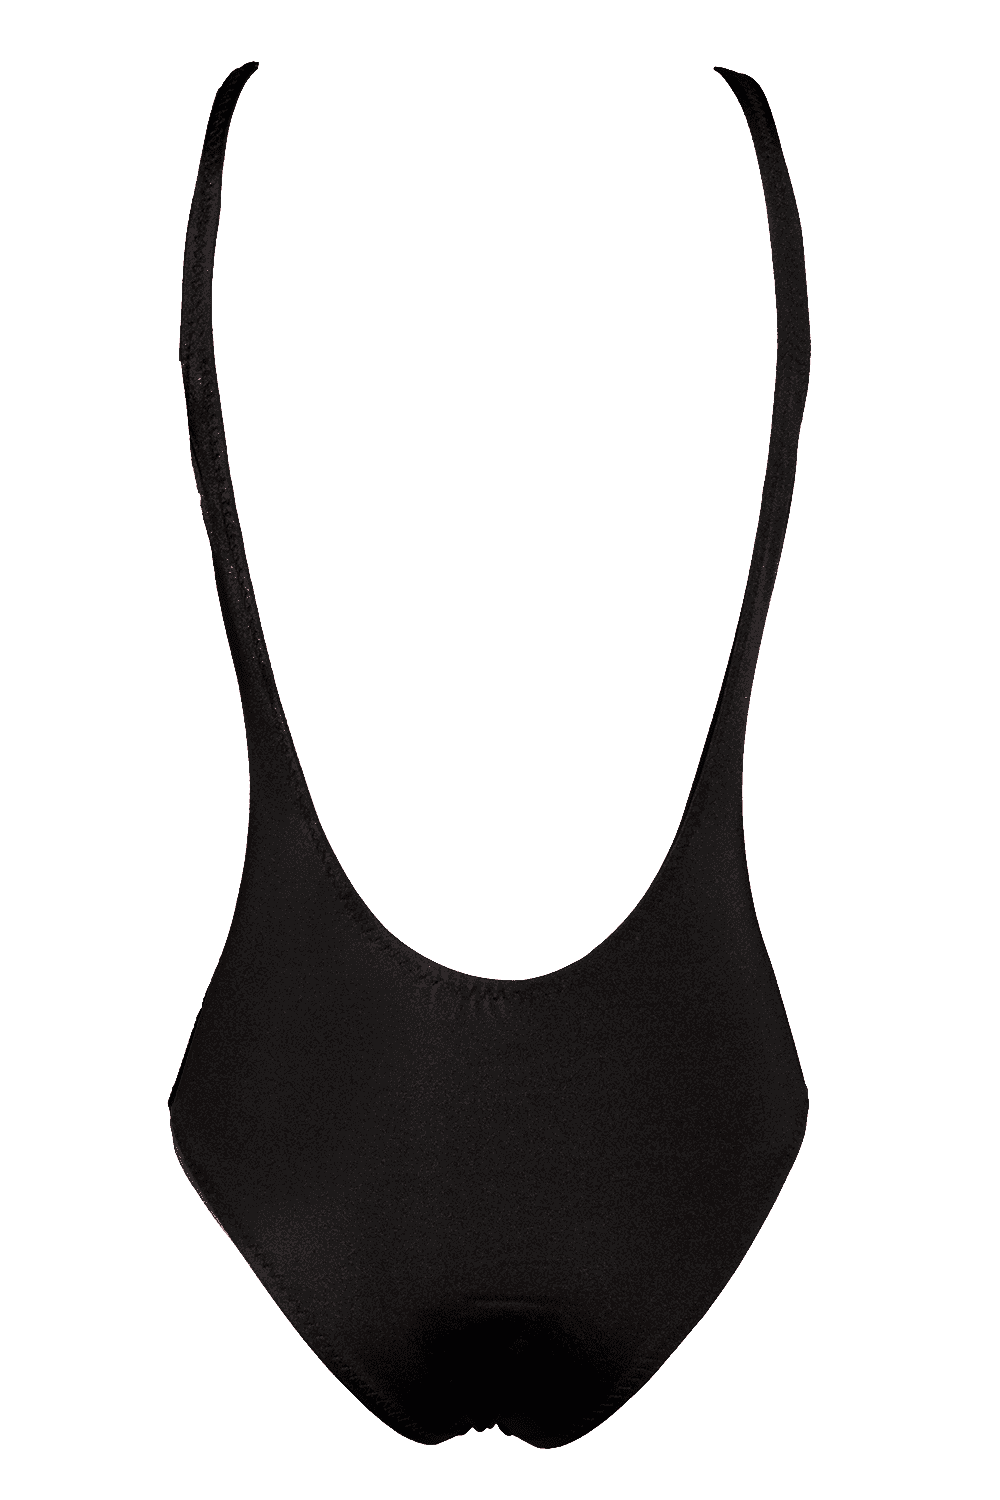 Malibu Black swimsuit - One Piece swimsuit by Love Jilty. Shop on yesUndress